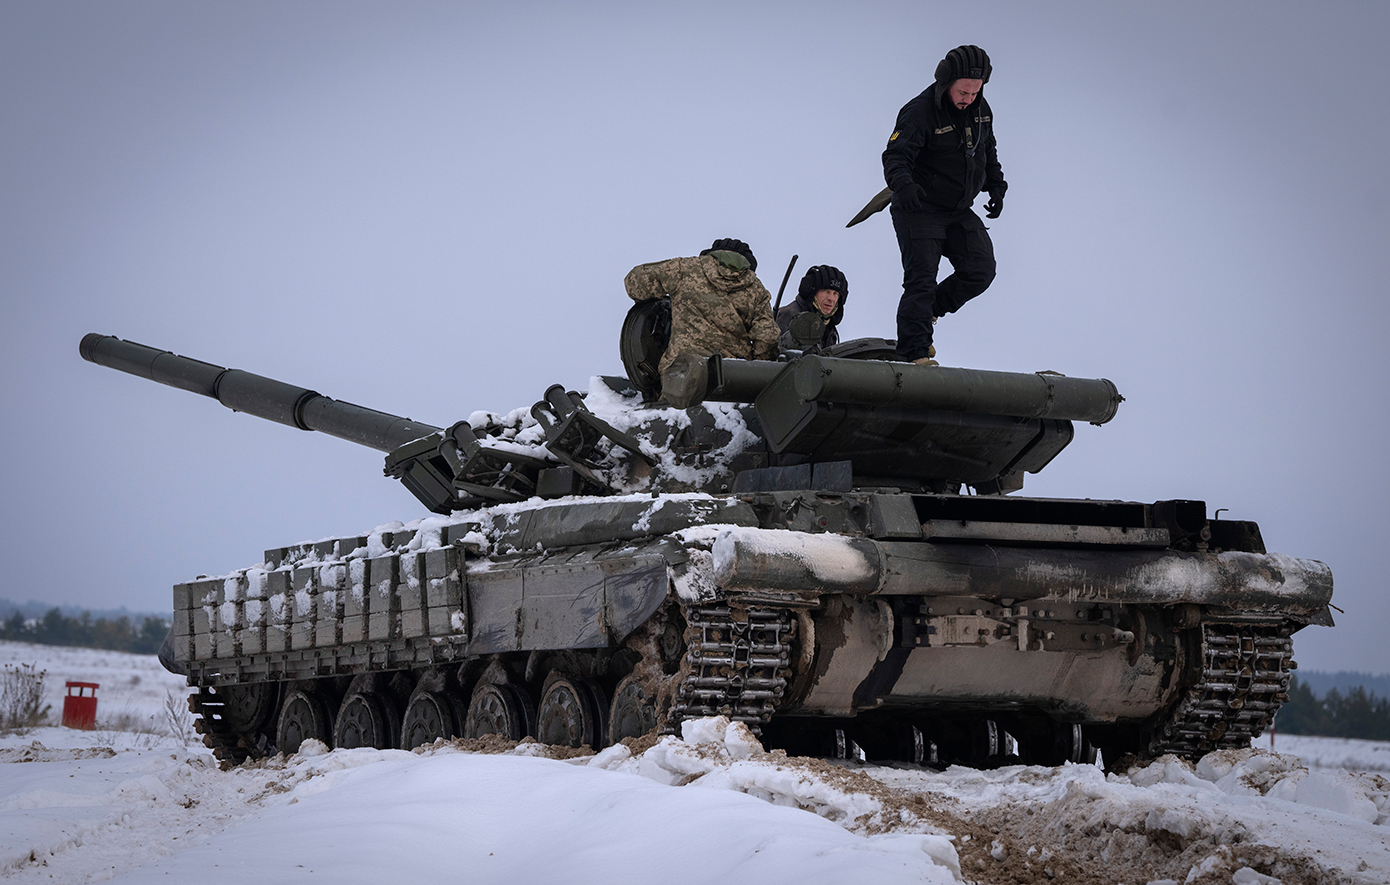 Νέο μέτωπο στον πόλεμο στην Ουκρανία, χερσαία επίθεση με θωρακισμένα από τη Ρωσία κατά της περιοχής του Χαρκόβου